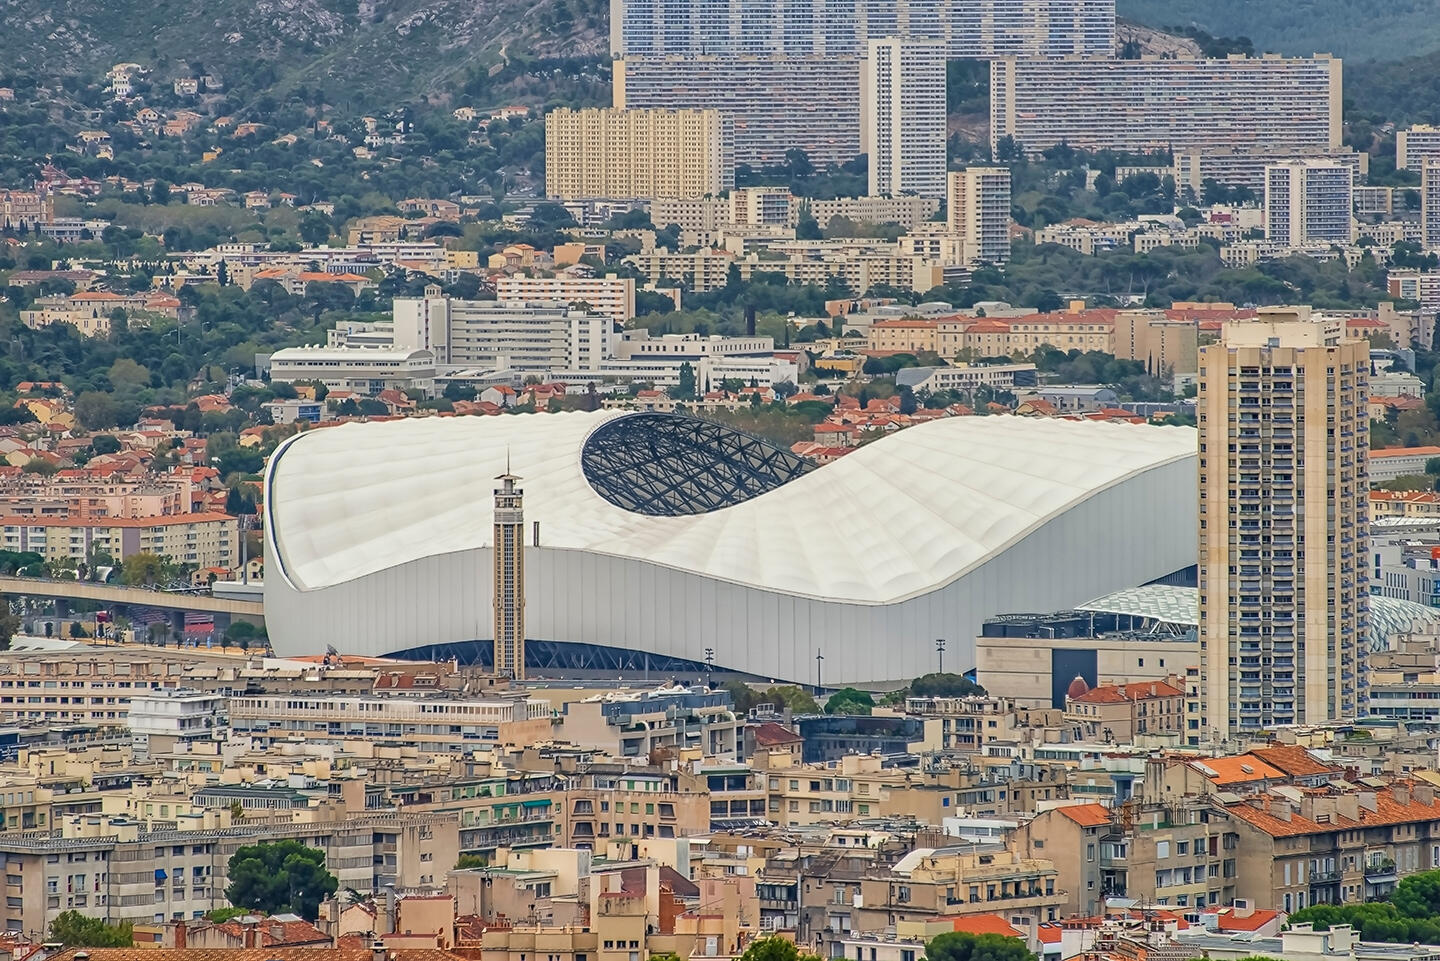 Vista aérea del Estadio Vélodrome de Marsella, con su icónica estructura blanca en forma de ola, rodeado por la densa arquitectura urbana de la ciudad y las colinas de fondo, que sugieren una experiencia envolvente para los visitantes alojados en apartahoteles locales.